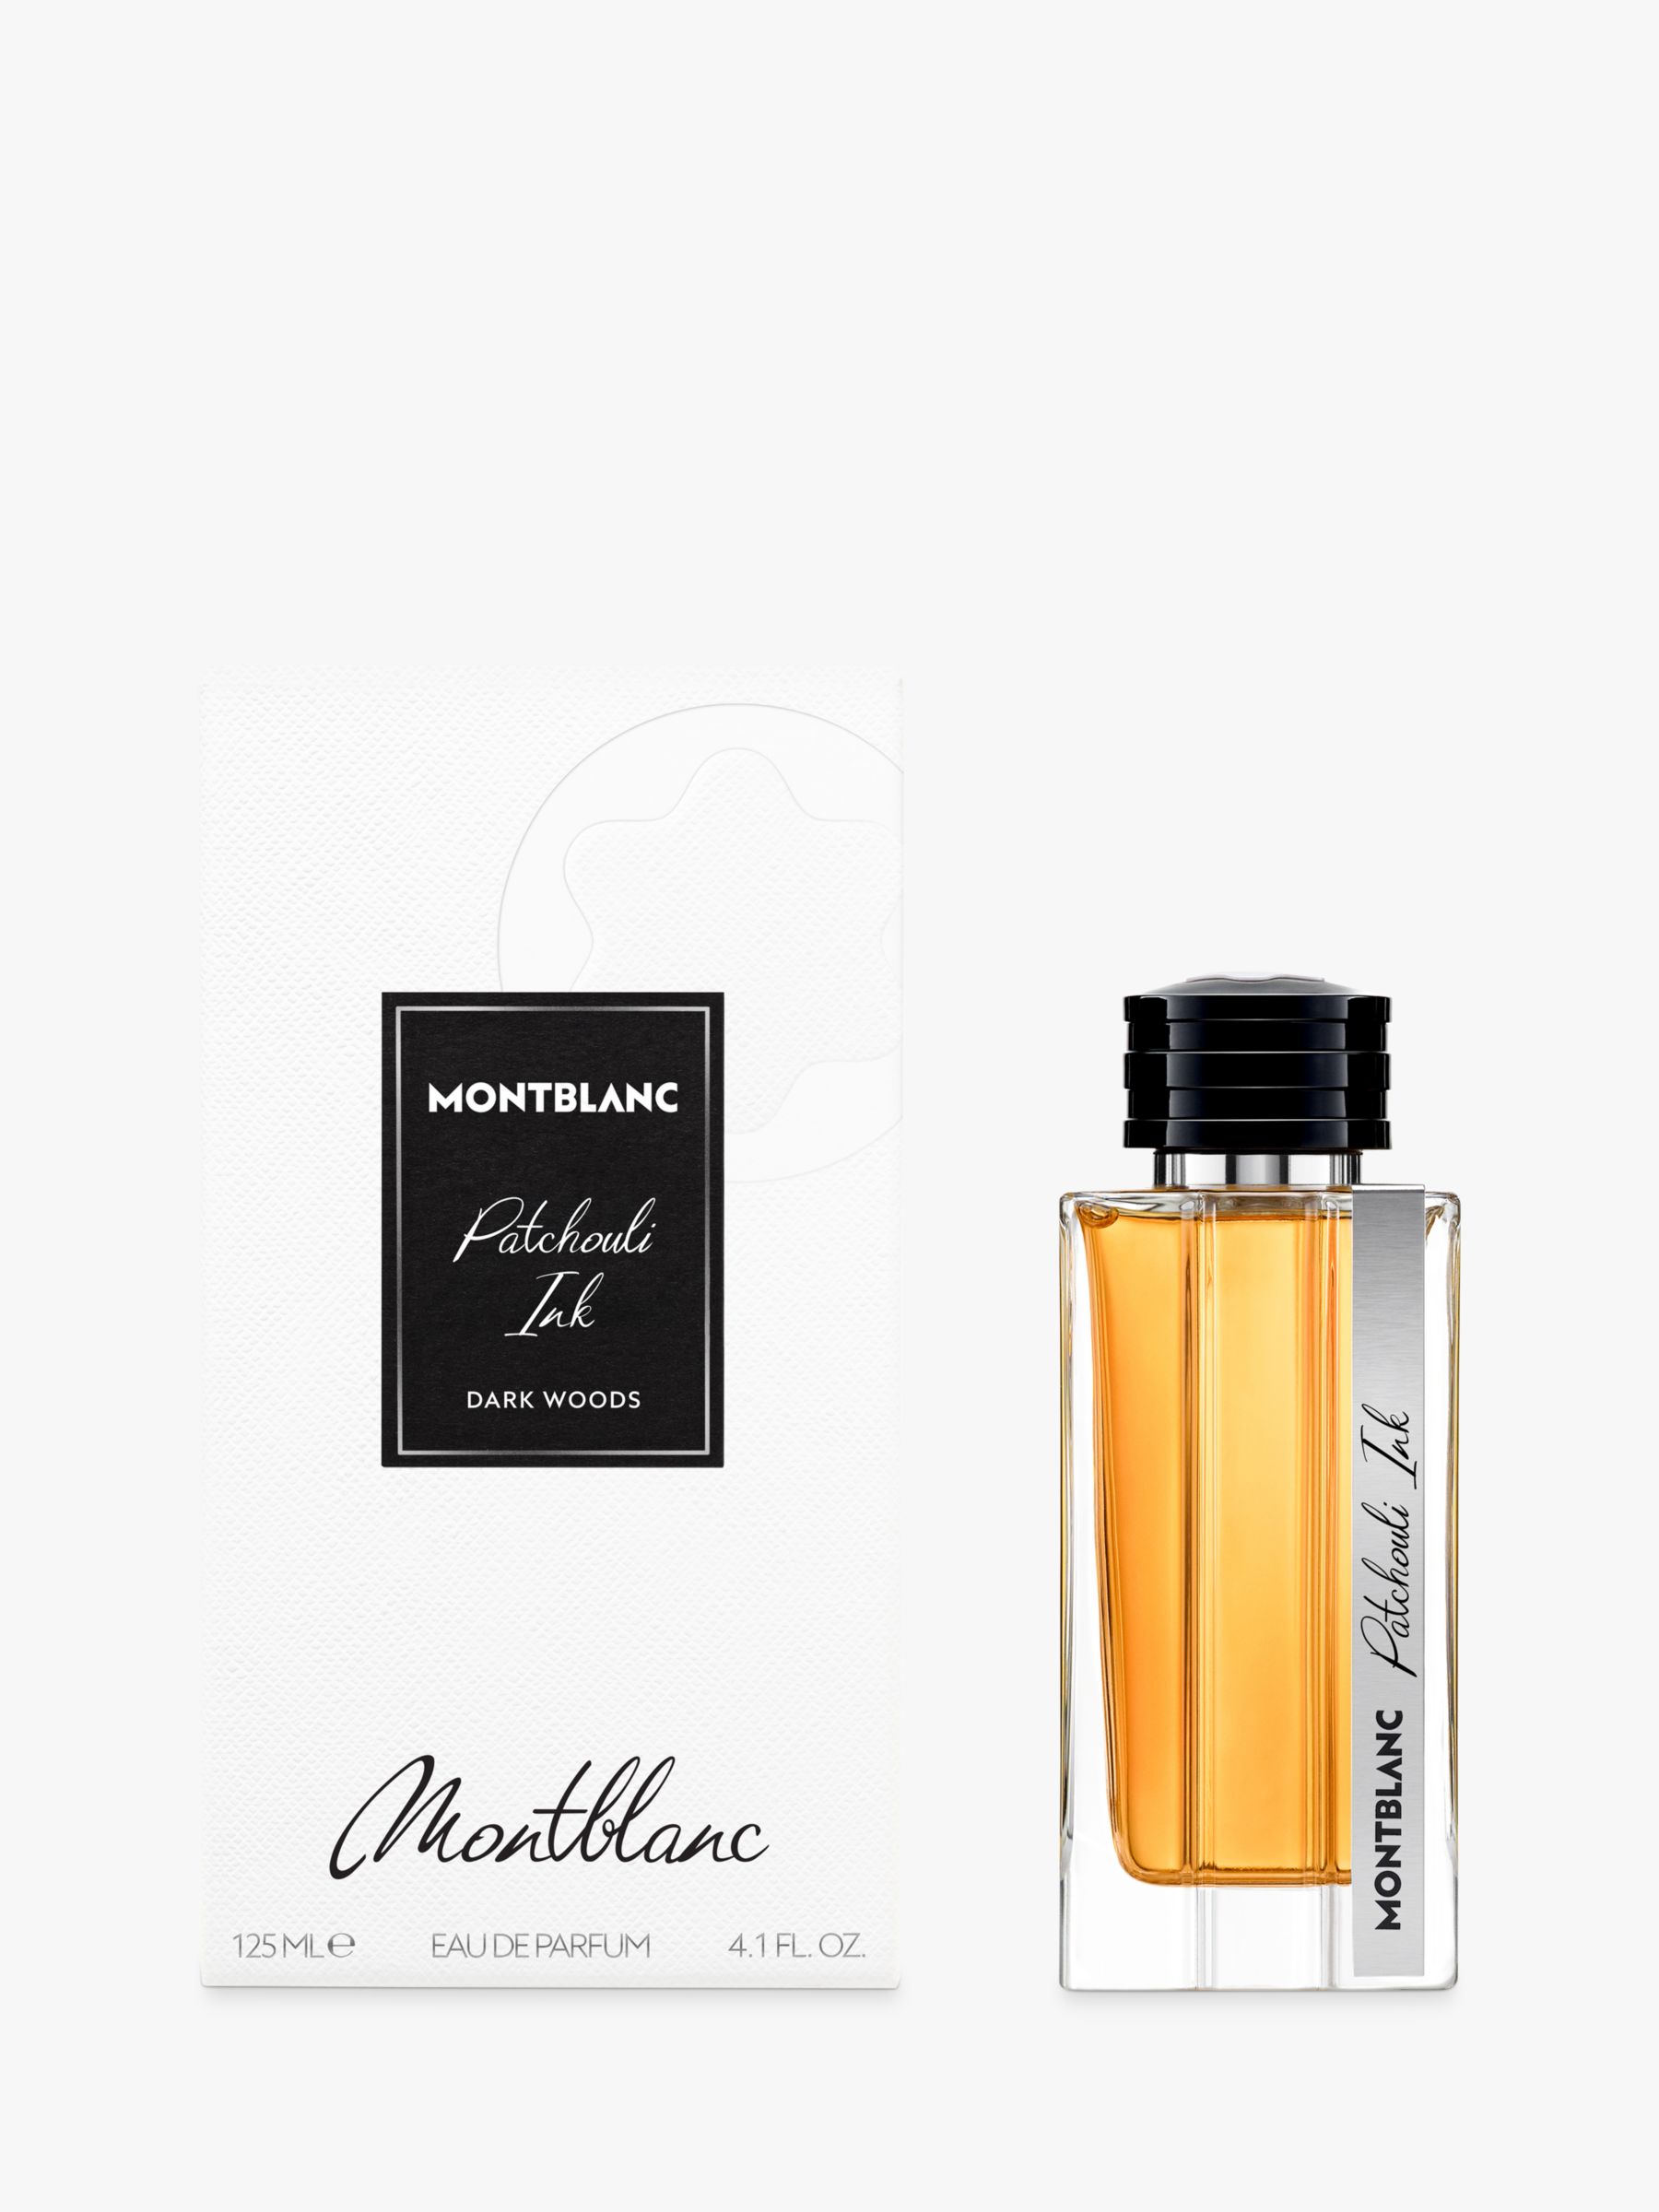 Montblanc Patchouli Ink Eau de Parfum, 125ml